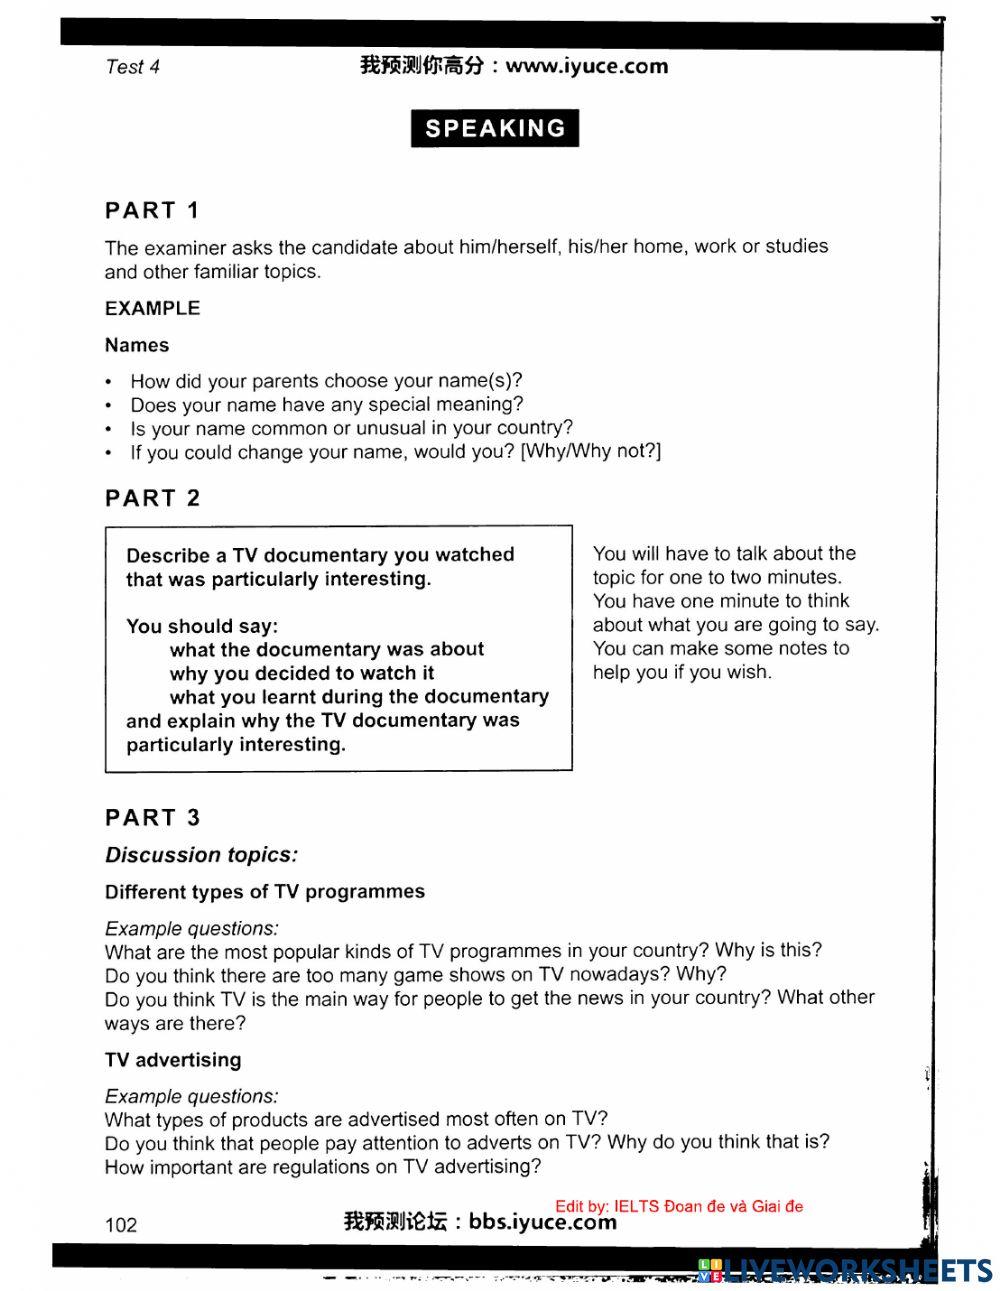 Ielts 11 - Test 4 - Speaking worksheet | Live Worksheets